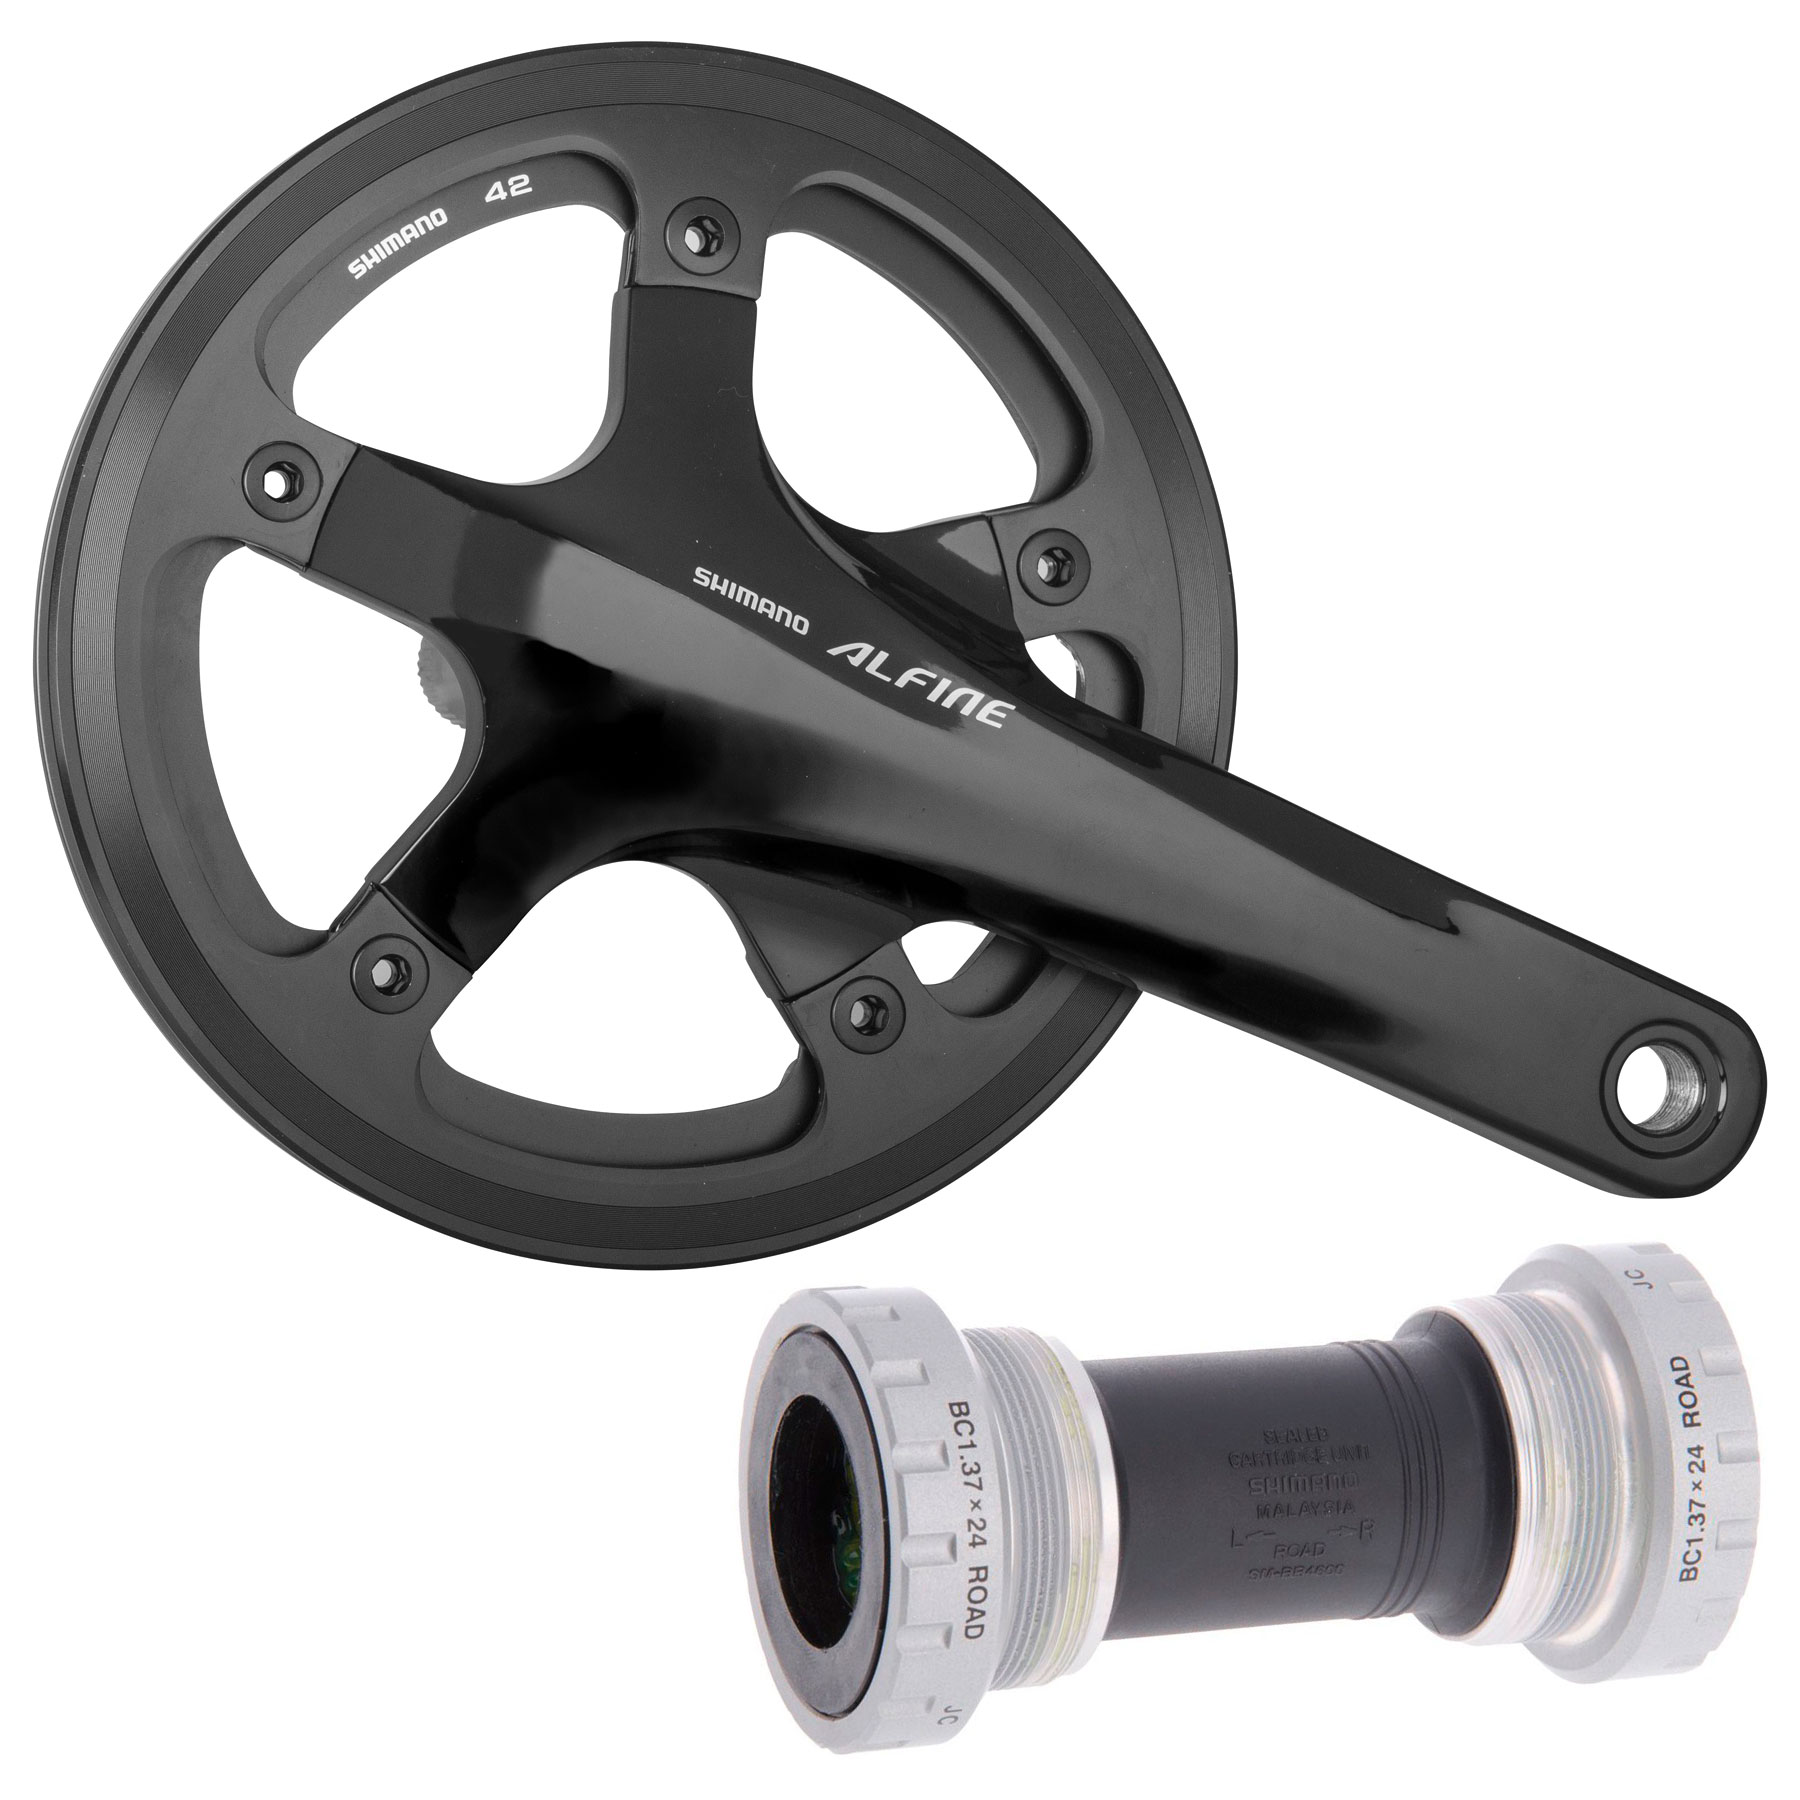 Produktbild von Shimano Alfine FC-S501 Kurbelgarnitur mit SM-BB4600 Innenlager - Kettenschutzring außen - schwarz